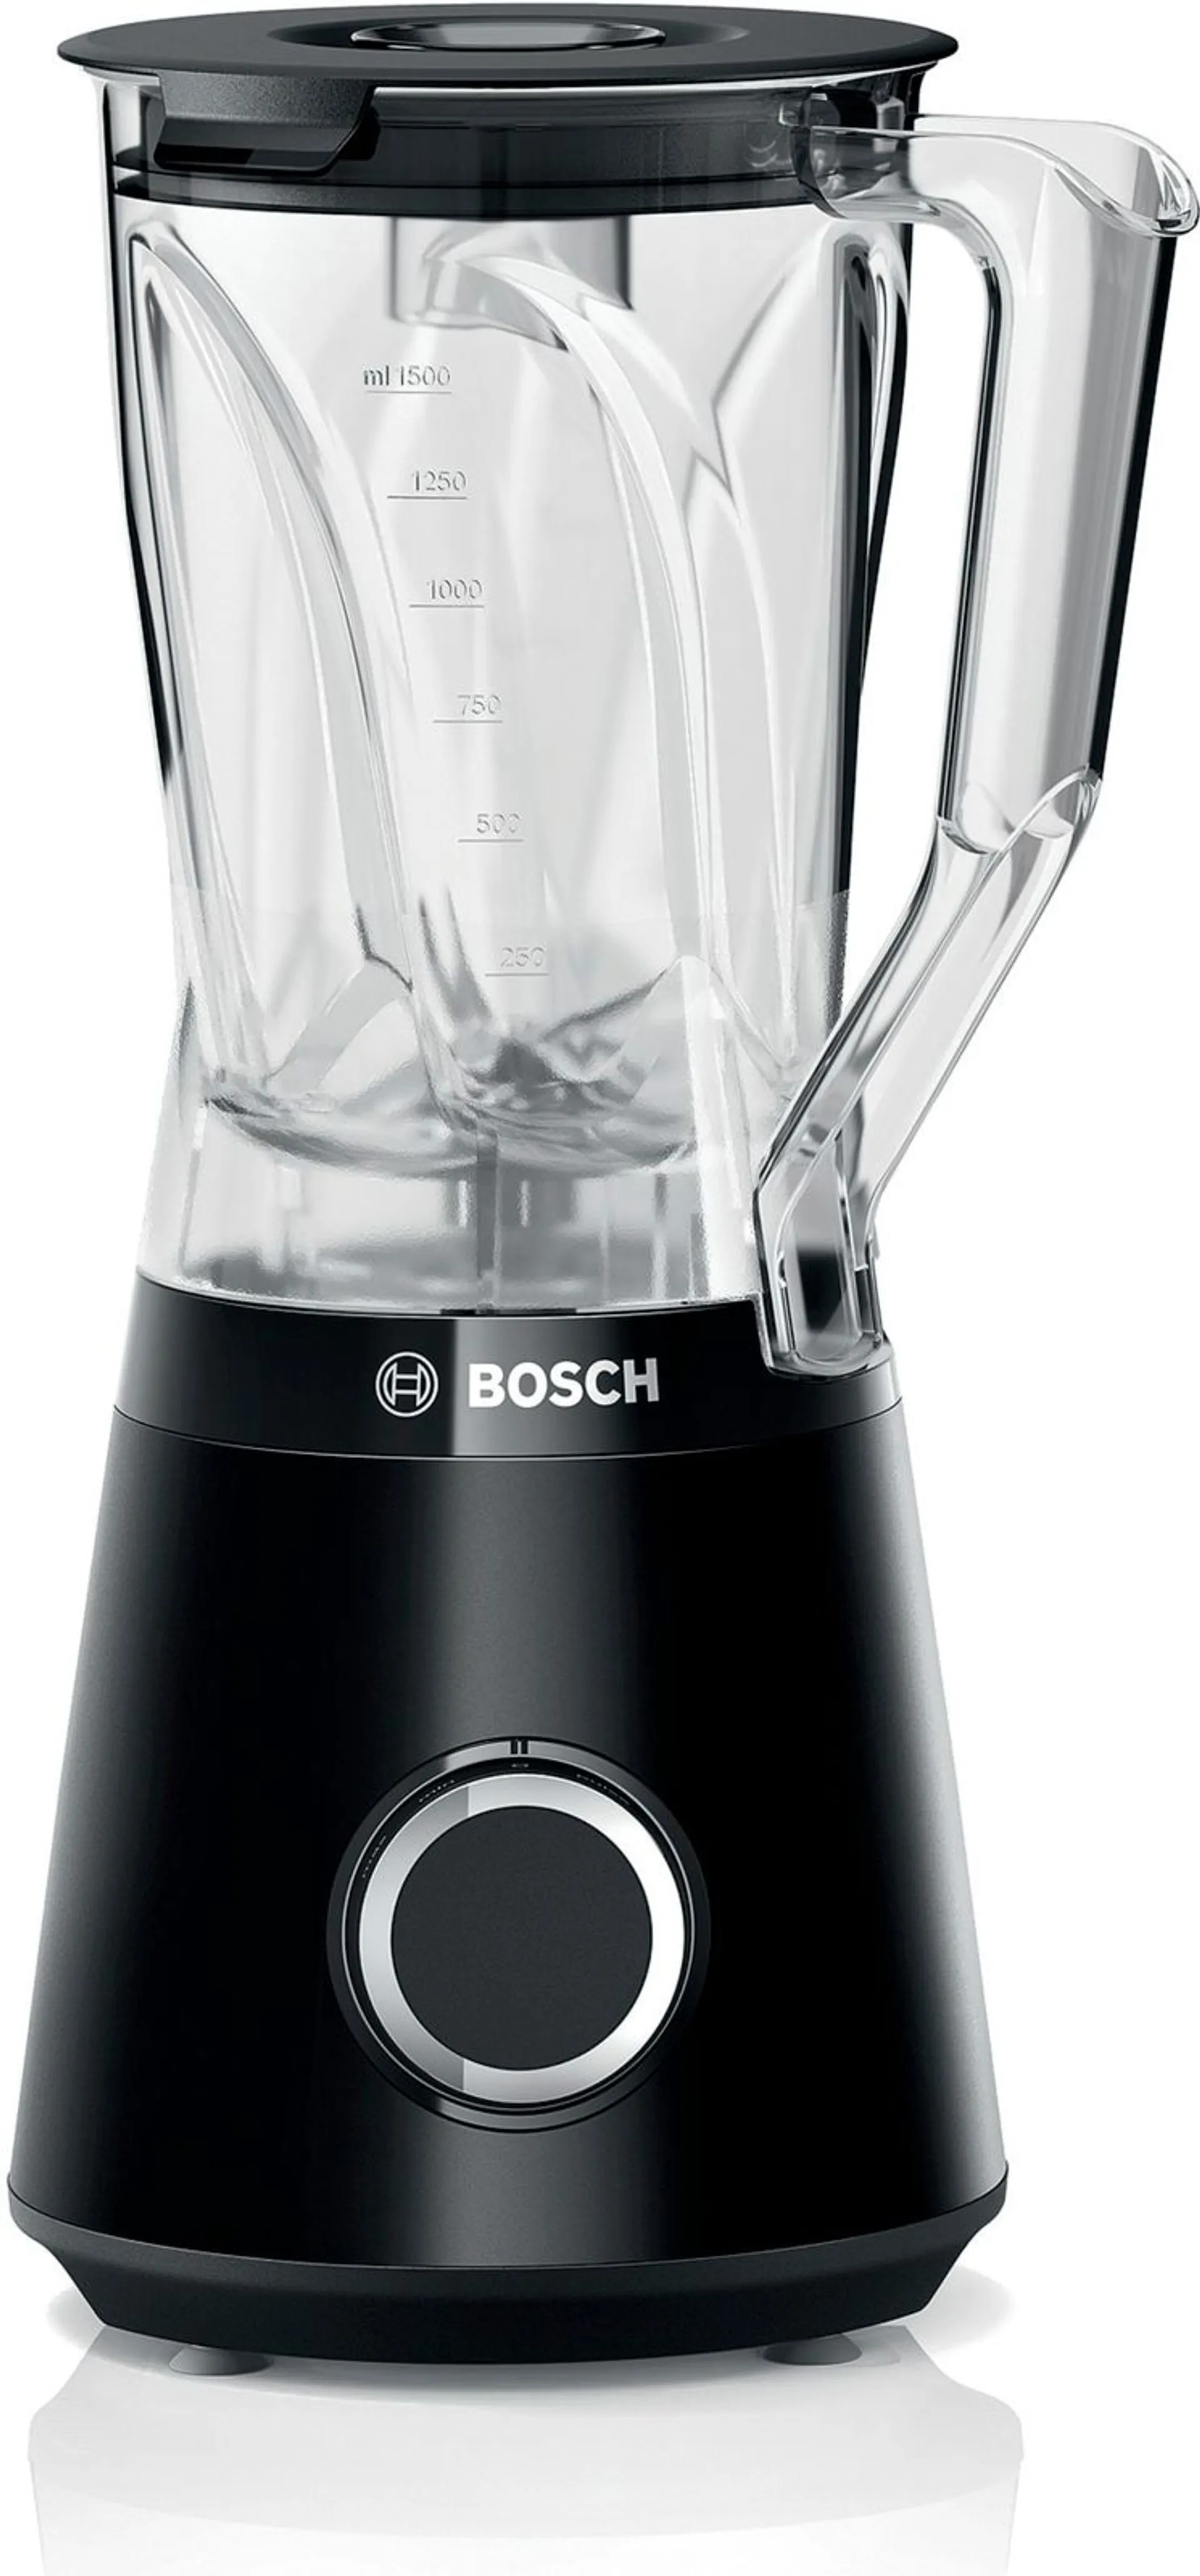 Bosch tehosekoitin VitaPower Serie 4 1200 W musta